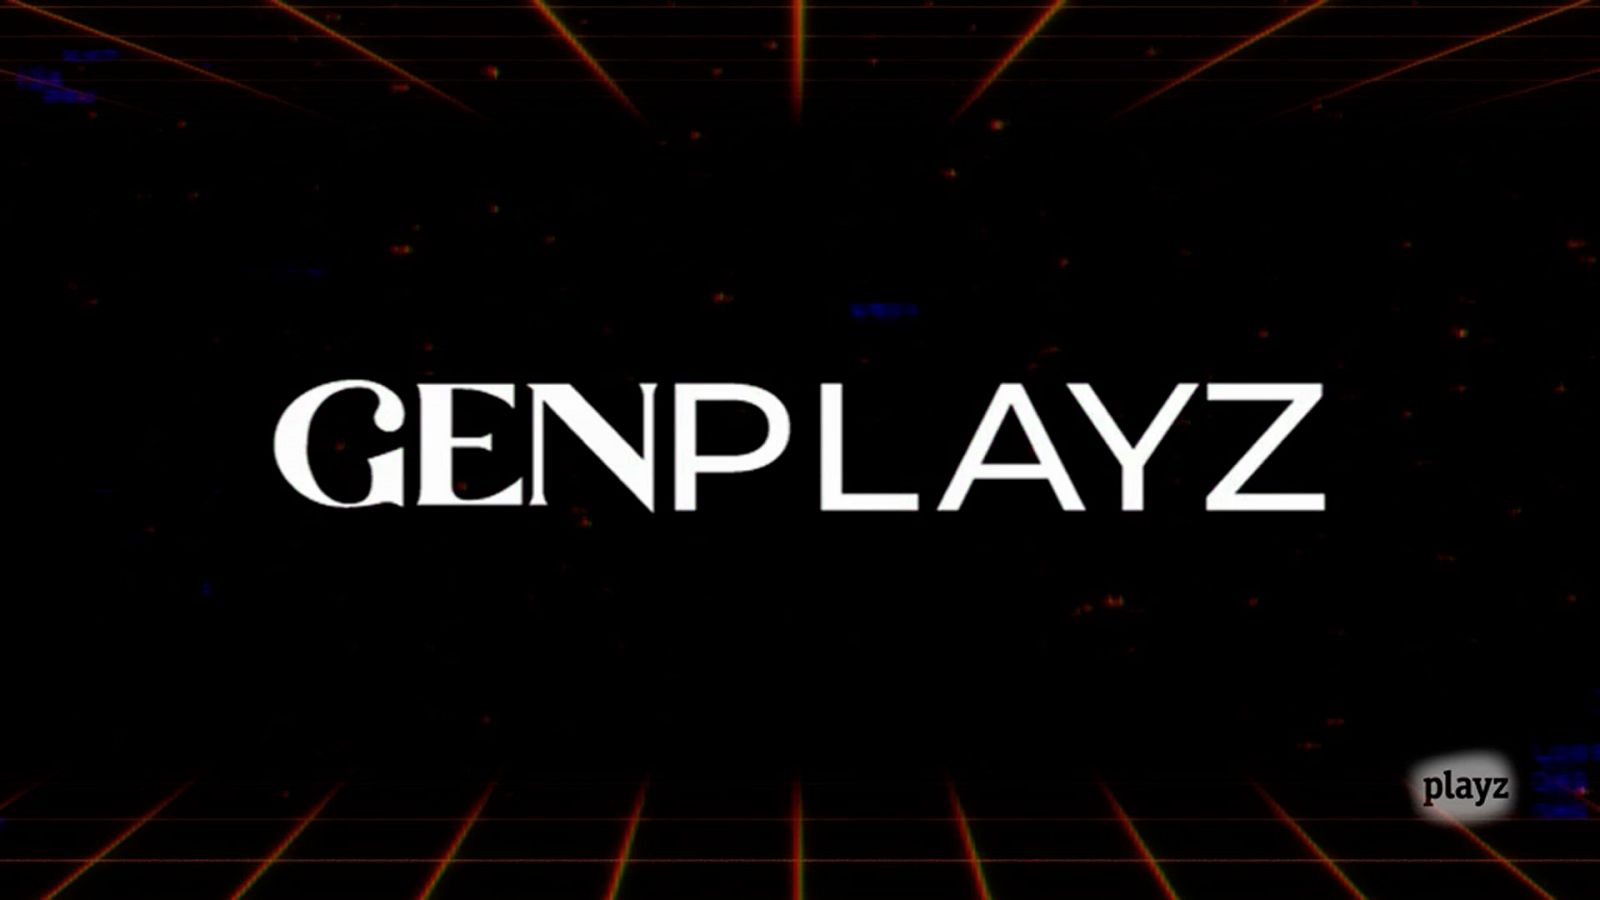 Gen Playz - La campanada del aGen Playz - La campanada del año: 15 de septiembre, gran estreno de 'Gen Playz'